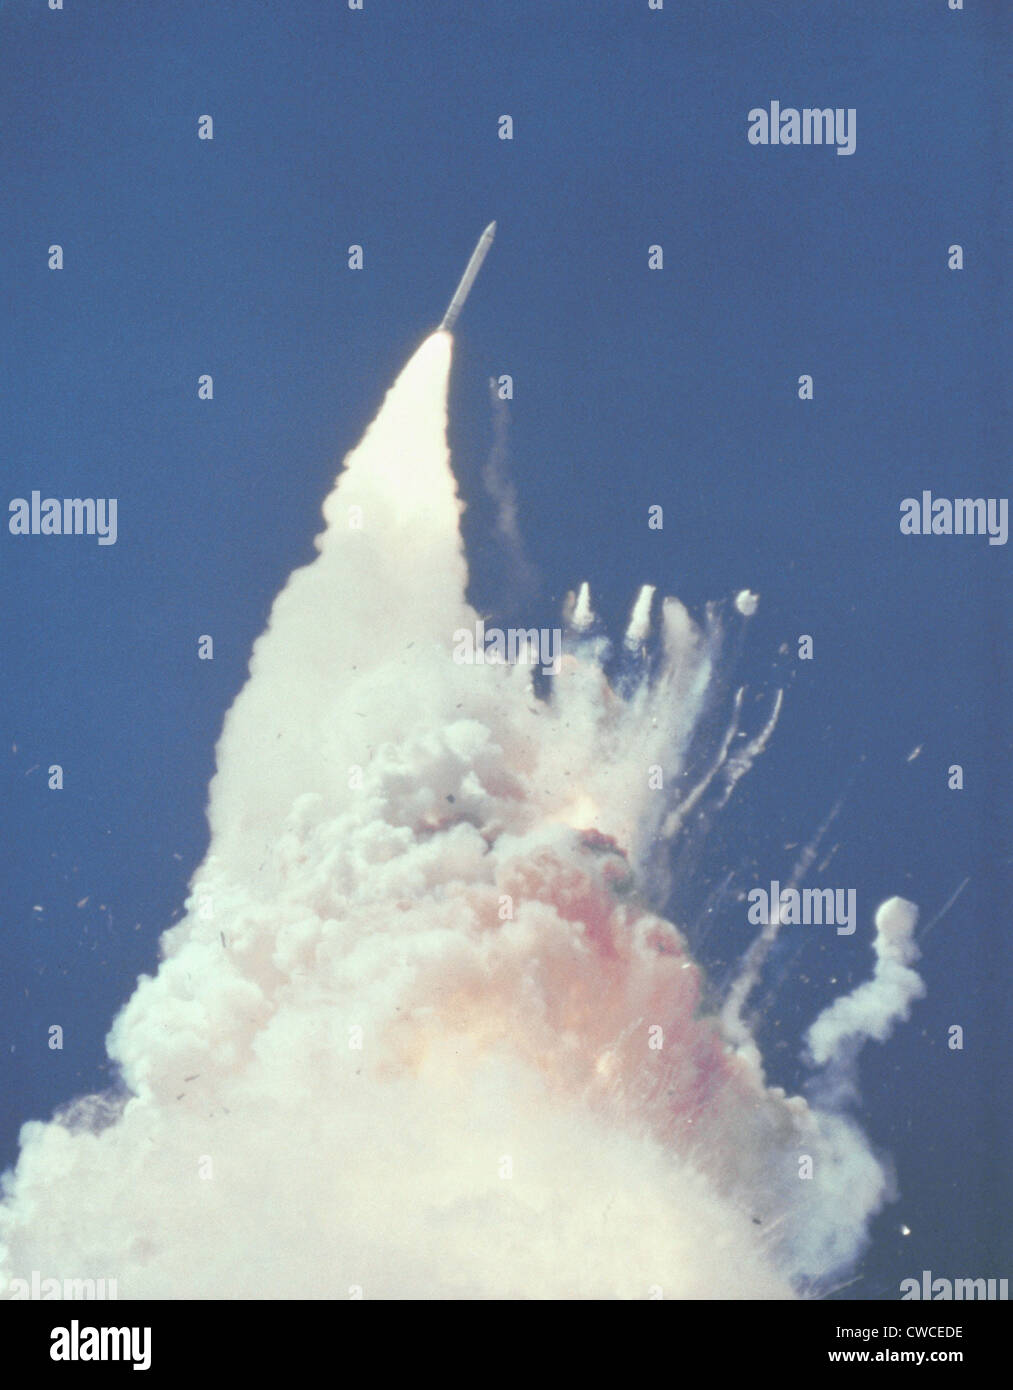 La catastrophe de la navette spatiale Challenger. 76 secondes en vol, nuage brun-rougeâtre enveloppe la désintégration de la navette. Fragments Banque D'Images